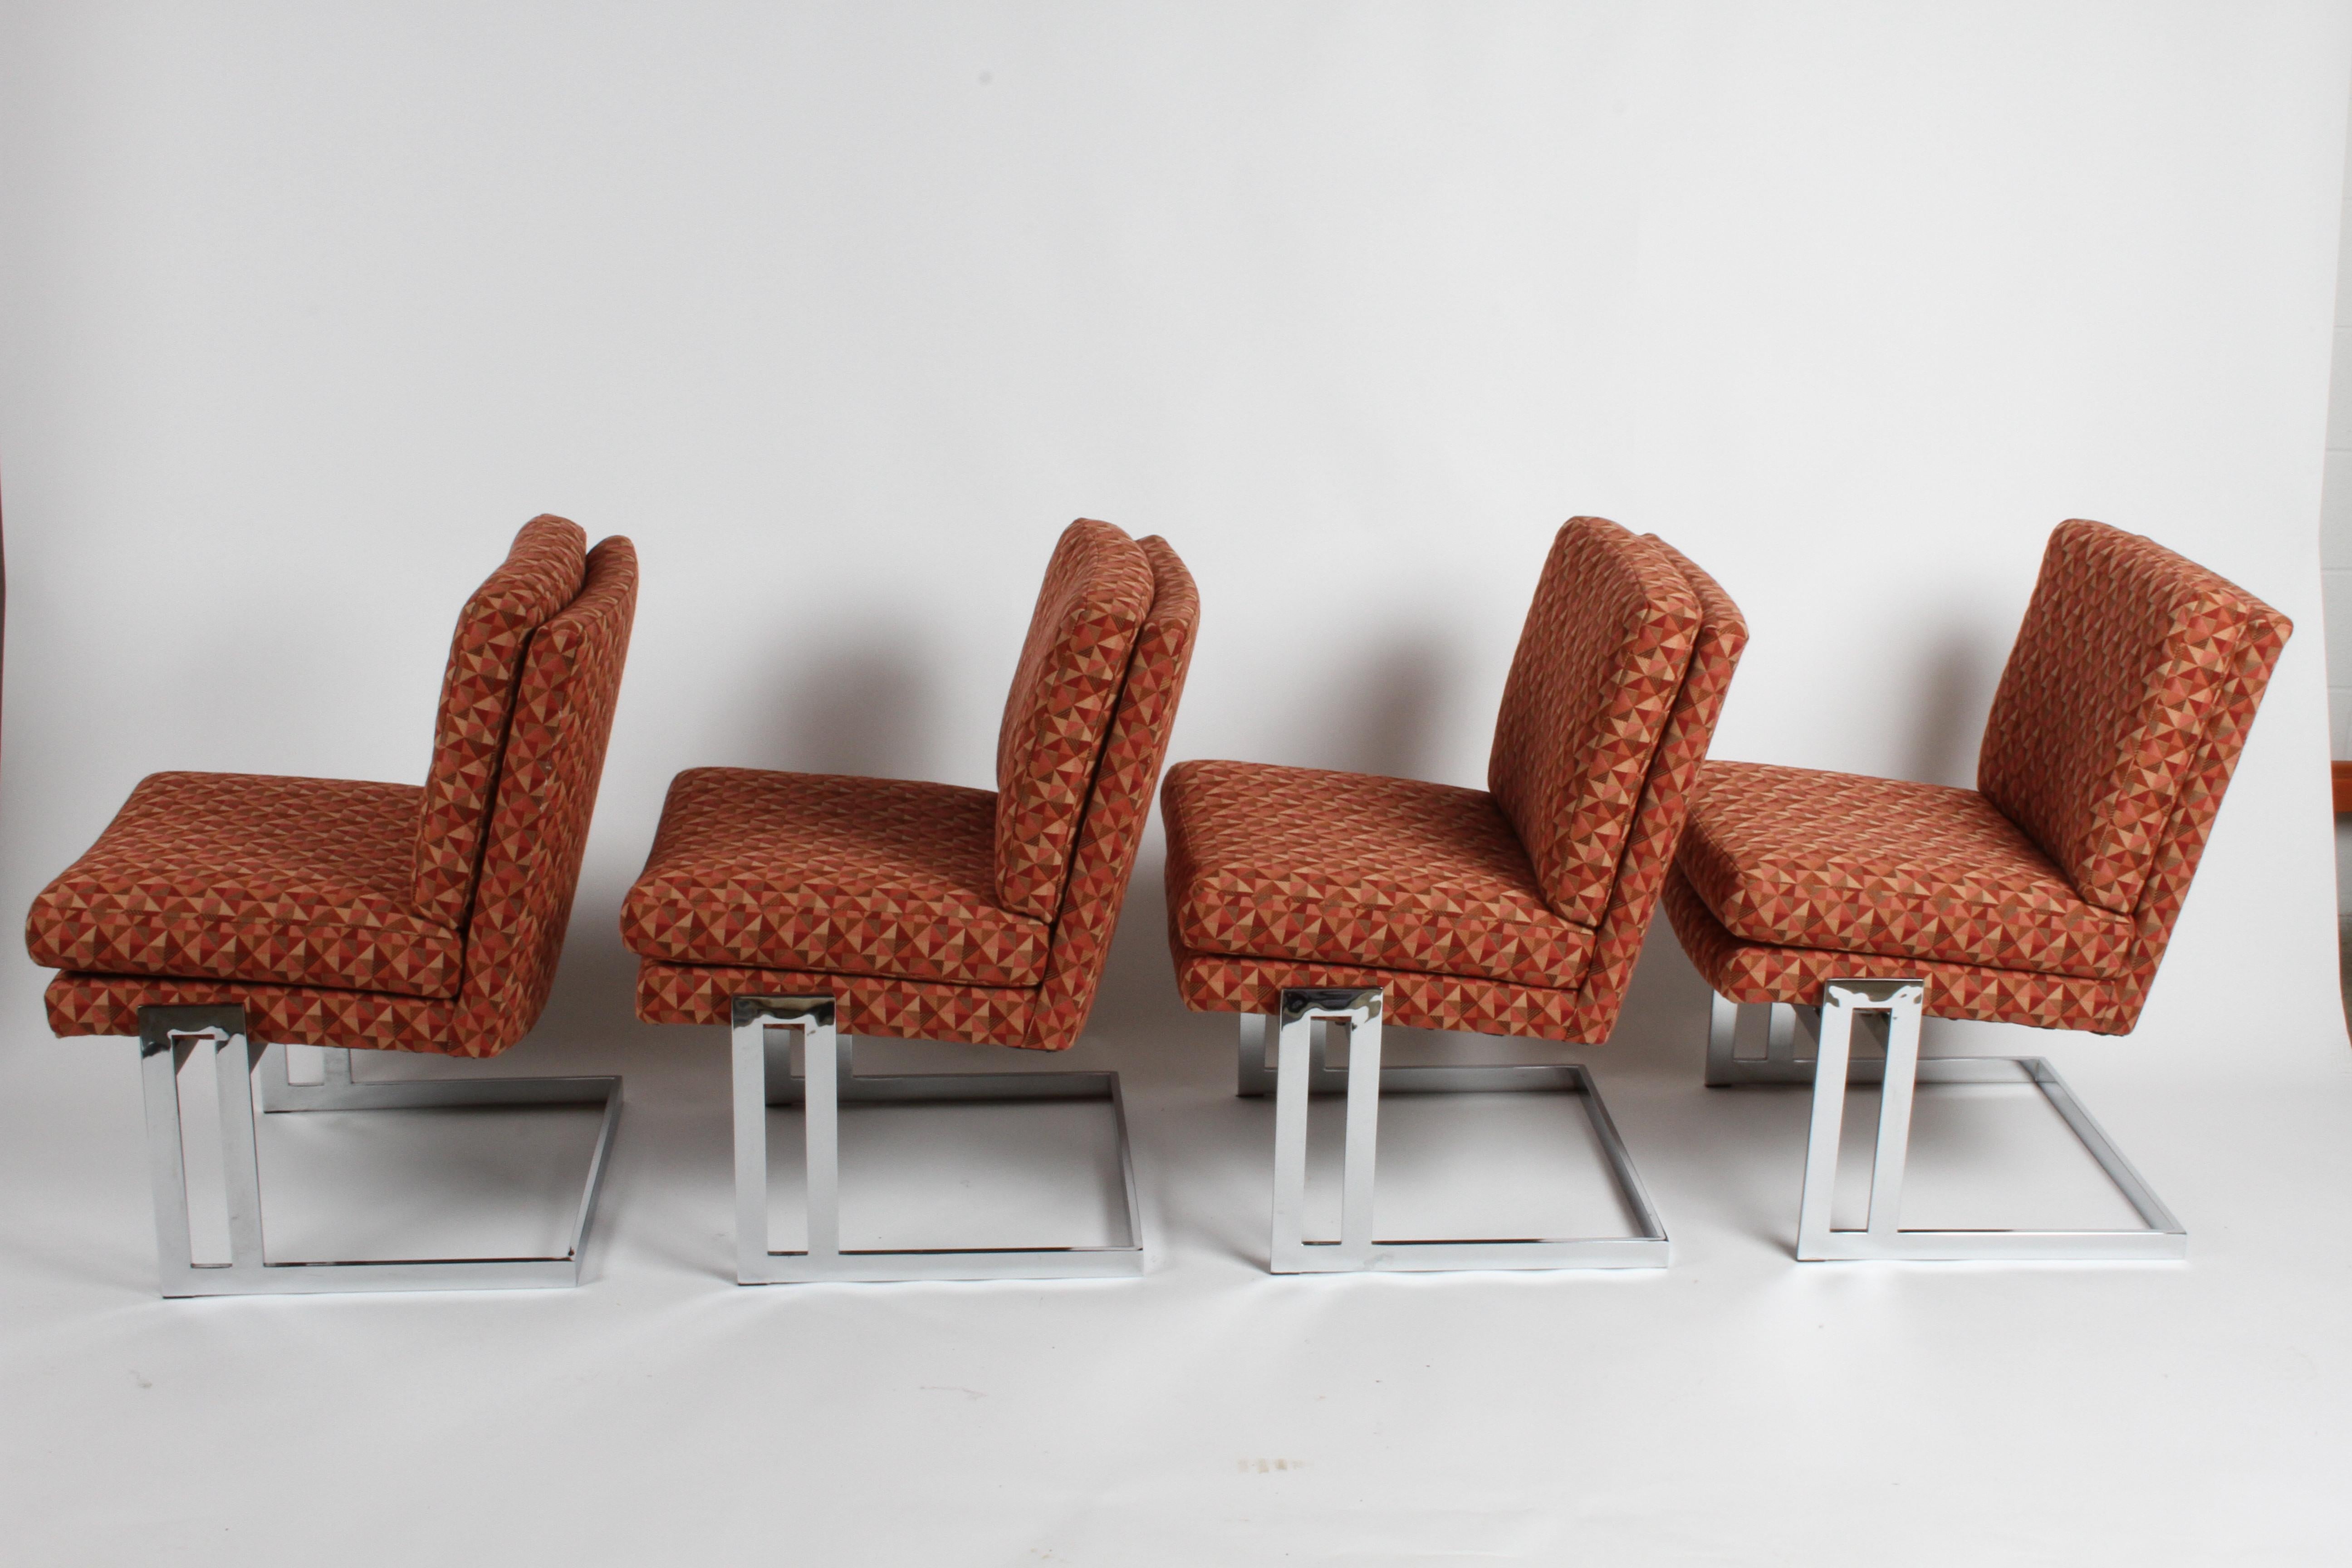 Ensemble de quatre chaises de salle à manger sans bras en porte-à-faux Milo Baughman pour Thayer-Coggin, modèle #1060 avec cadres chromés. Ces chaises étaient utilisées autour d'une table de jeu conçue par Leo Rosen pour Pace. Elles ont conservé